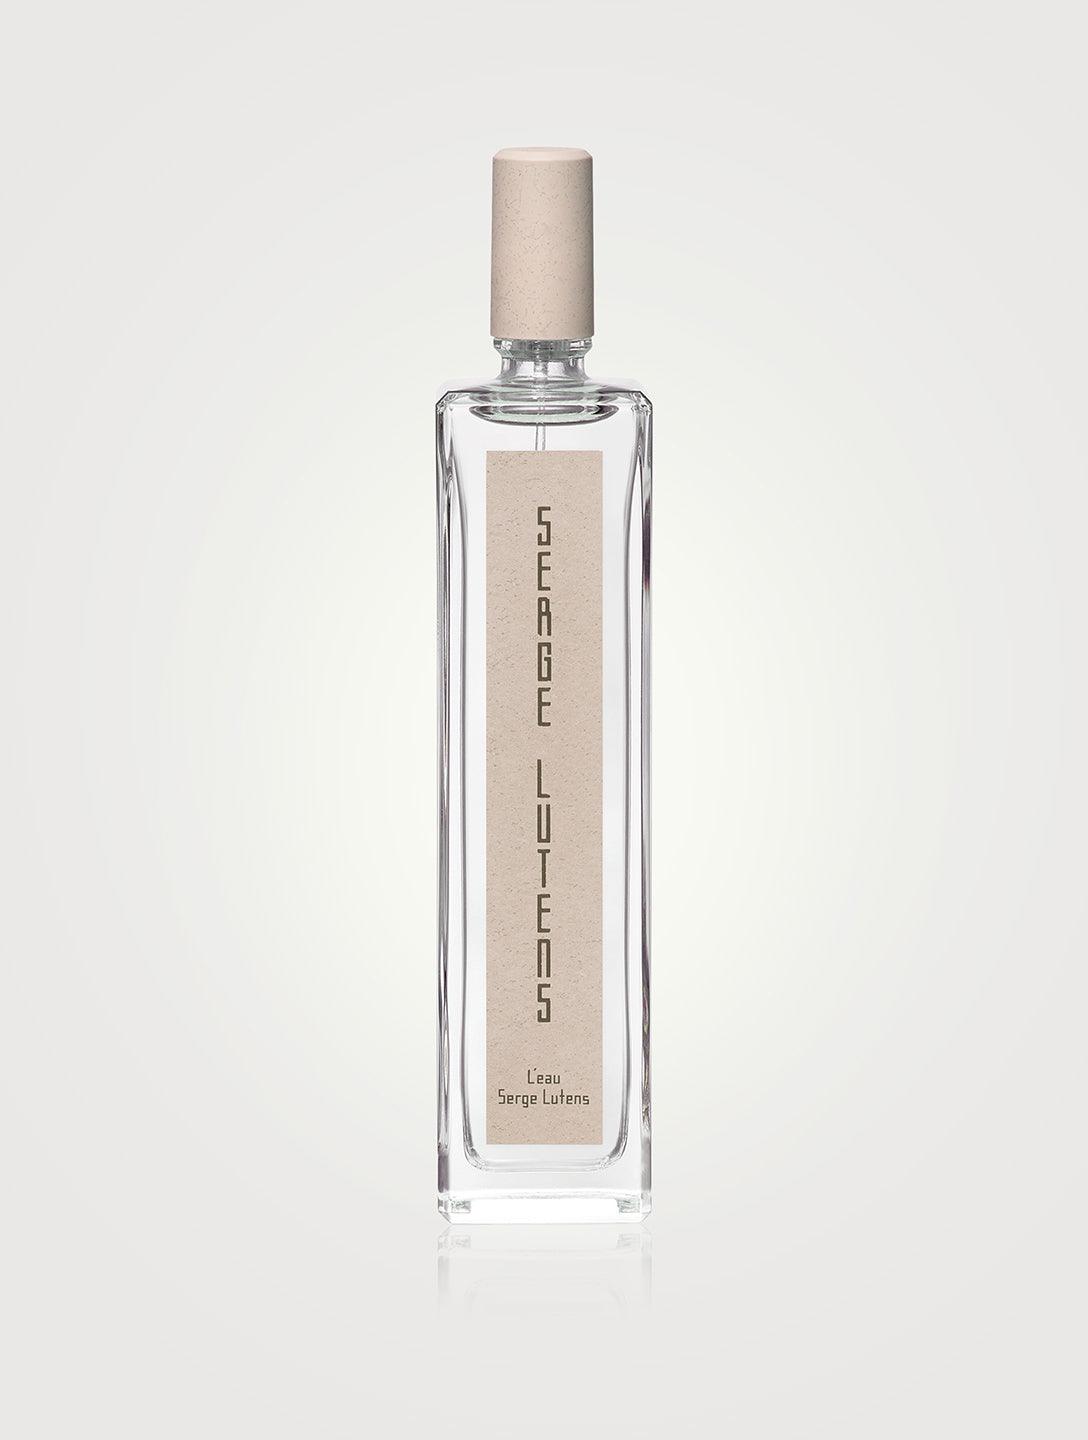 Serge lutens L'eau Eau de parfum for Men & women - Parfum Gallerie